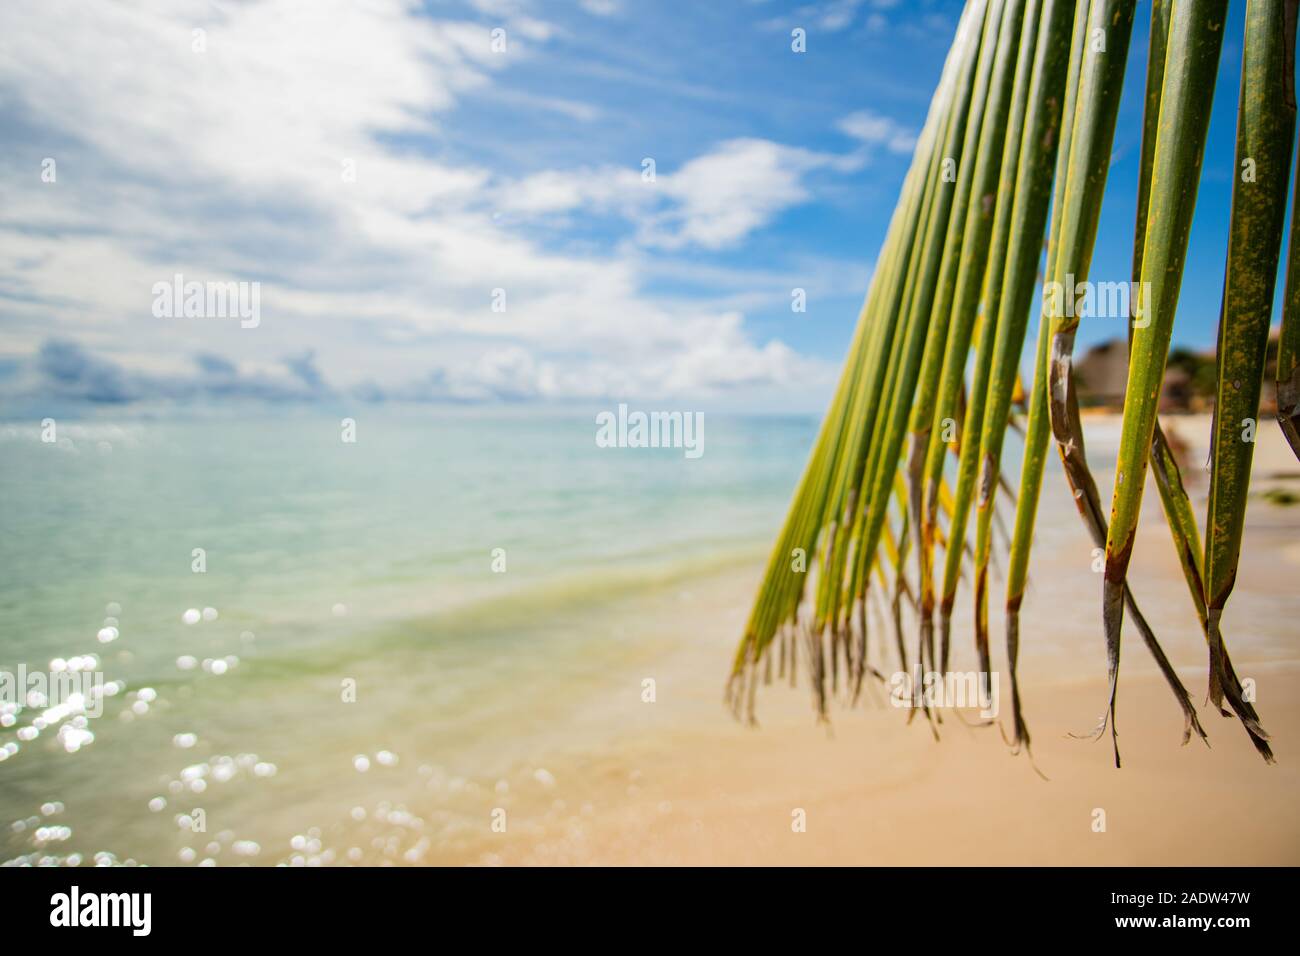 Caribbean Dream - plage parfaite avec sable blanc et eau turquoise à Mer des Caraïbes à Playa del Carmen, Mexique Banque D'Images